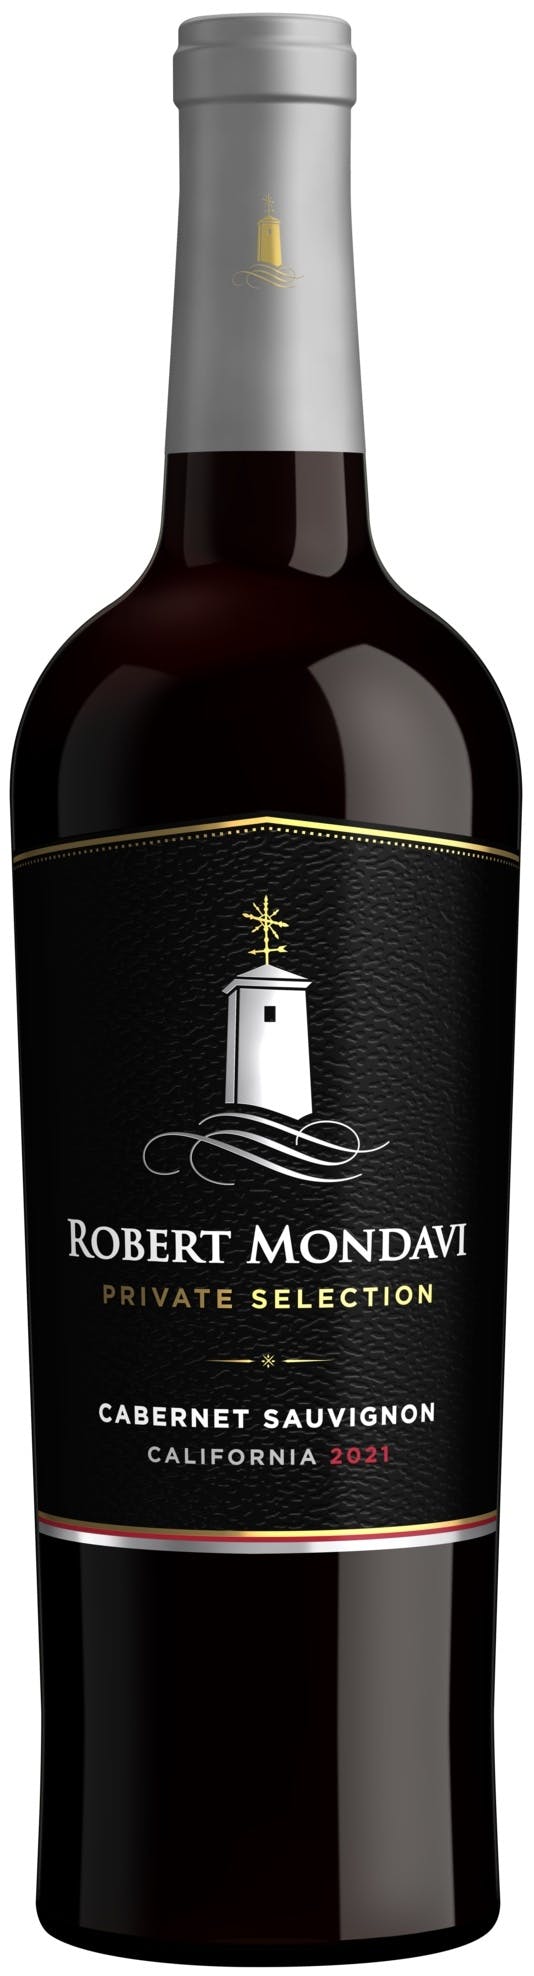 Robert Mondavi Private Selection Cabernet Sauvignon 2021 750ml Vine Republic